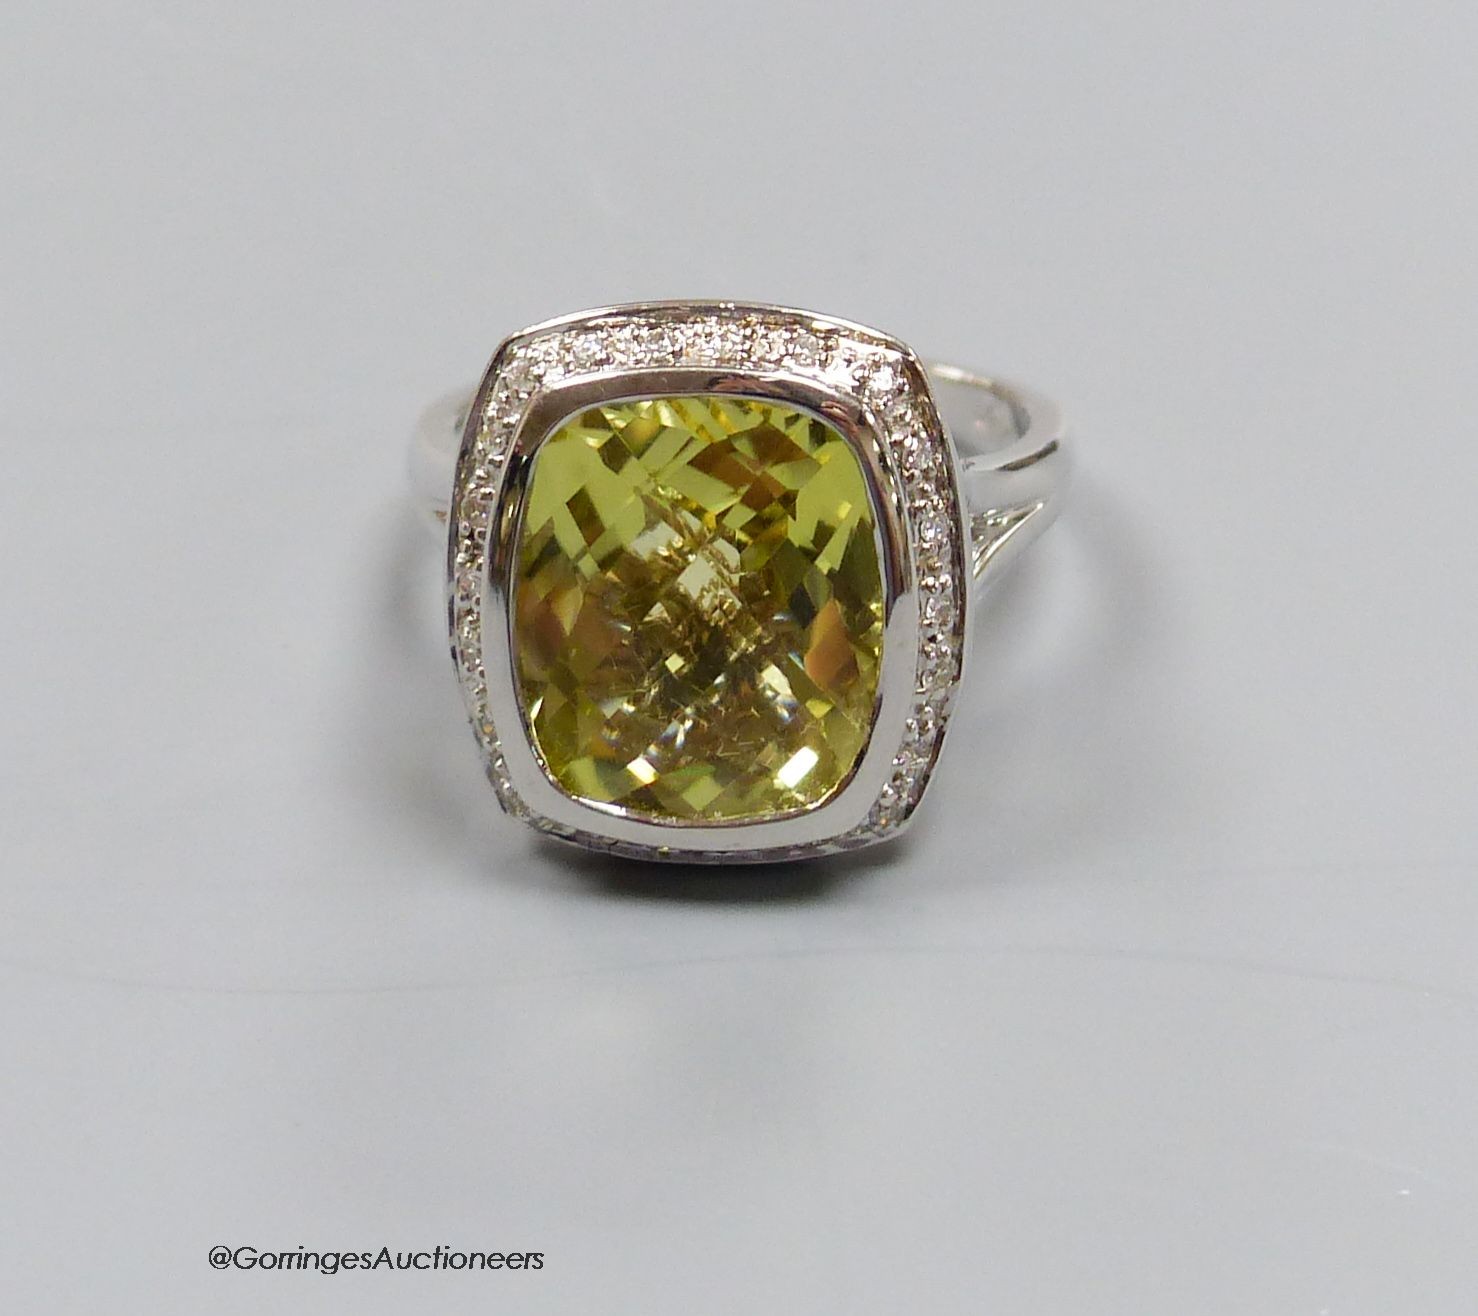 An 18ct white gold, diamond and lemon quartz cluster ring, size N, gross 7.3g.